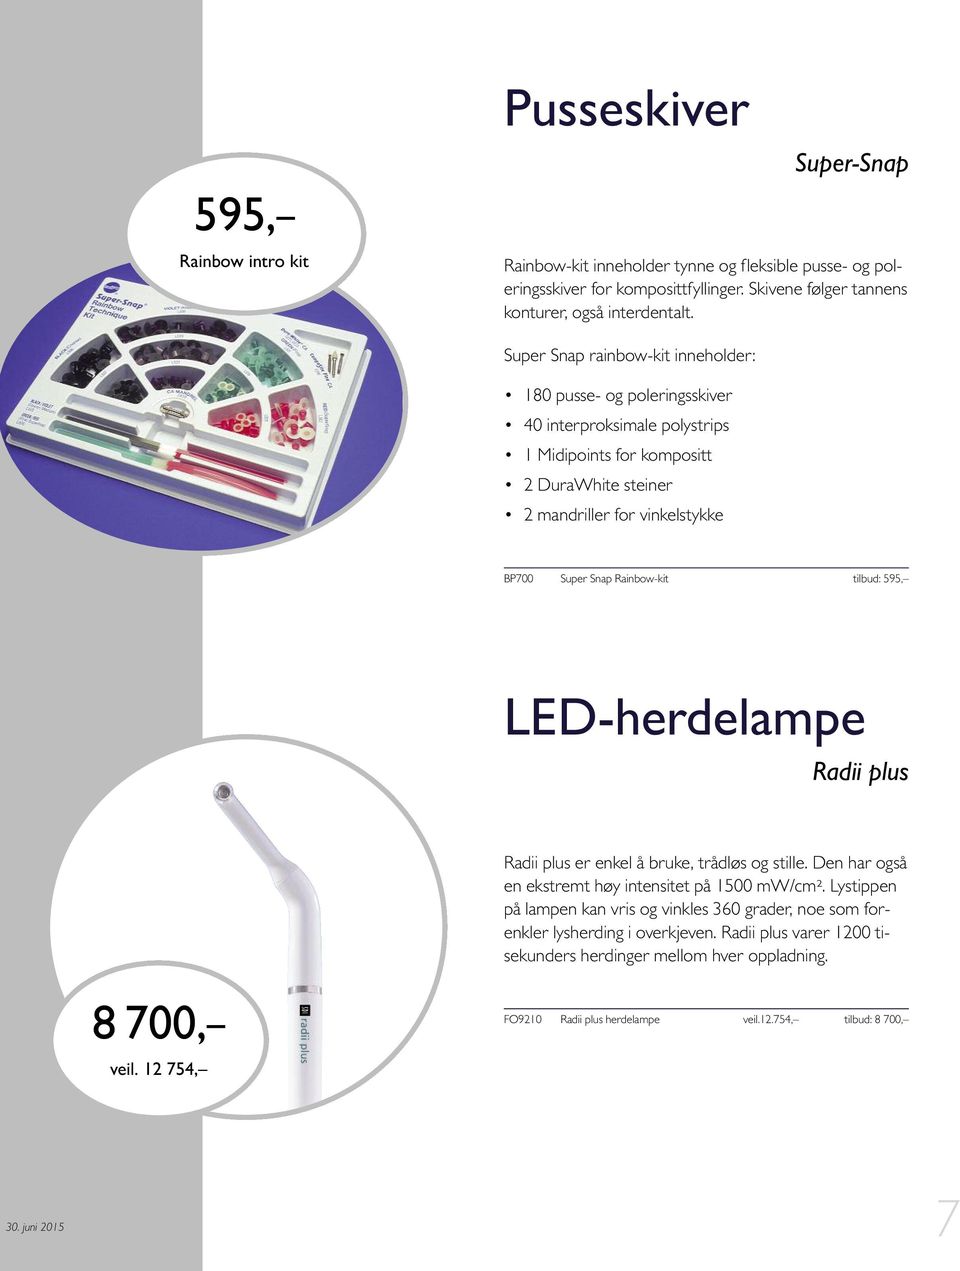 Rainbow-kit tilbud: 595, LED-herdelampe Radii plus Radii plus er enkel å bruke, trådløs og stille. Den har også en ekstremt høy intensitet på 1500 mw/cm2.